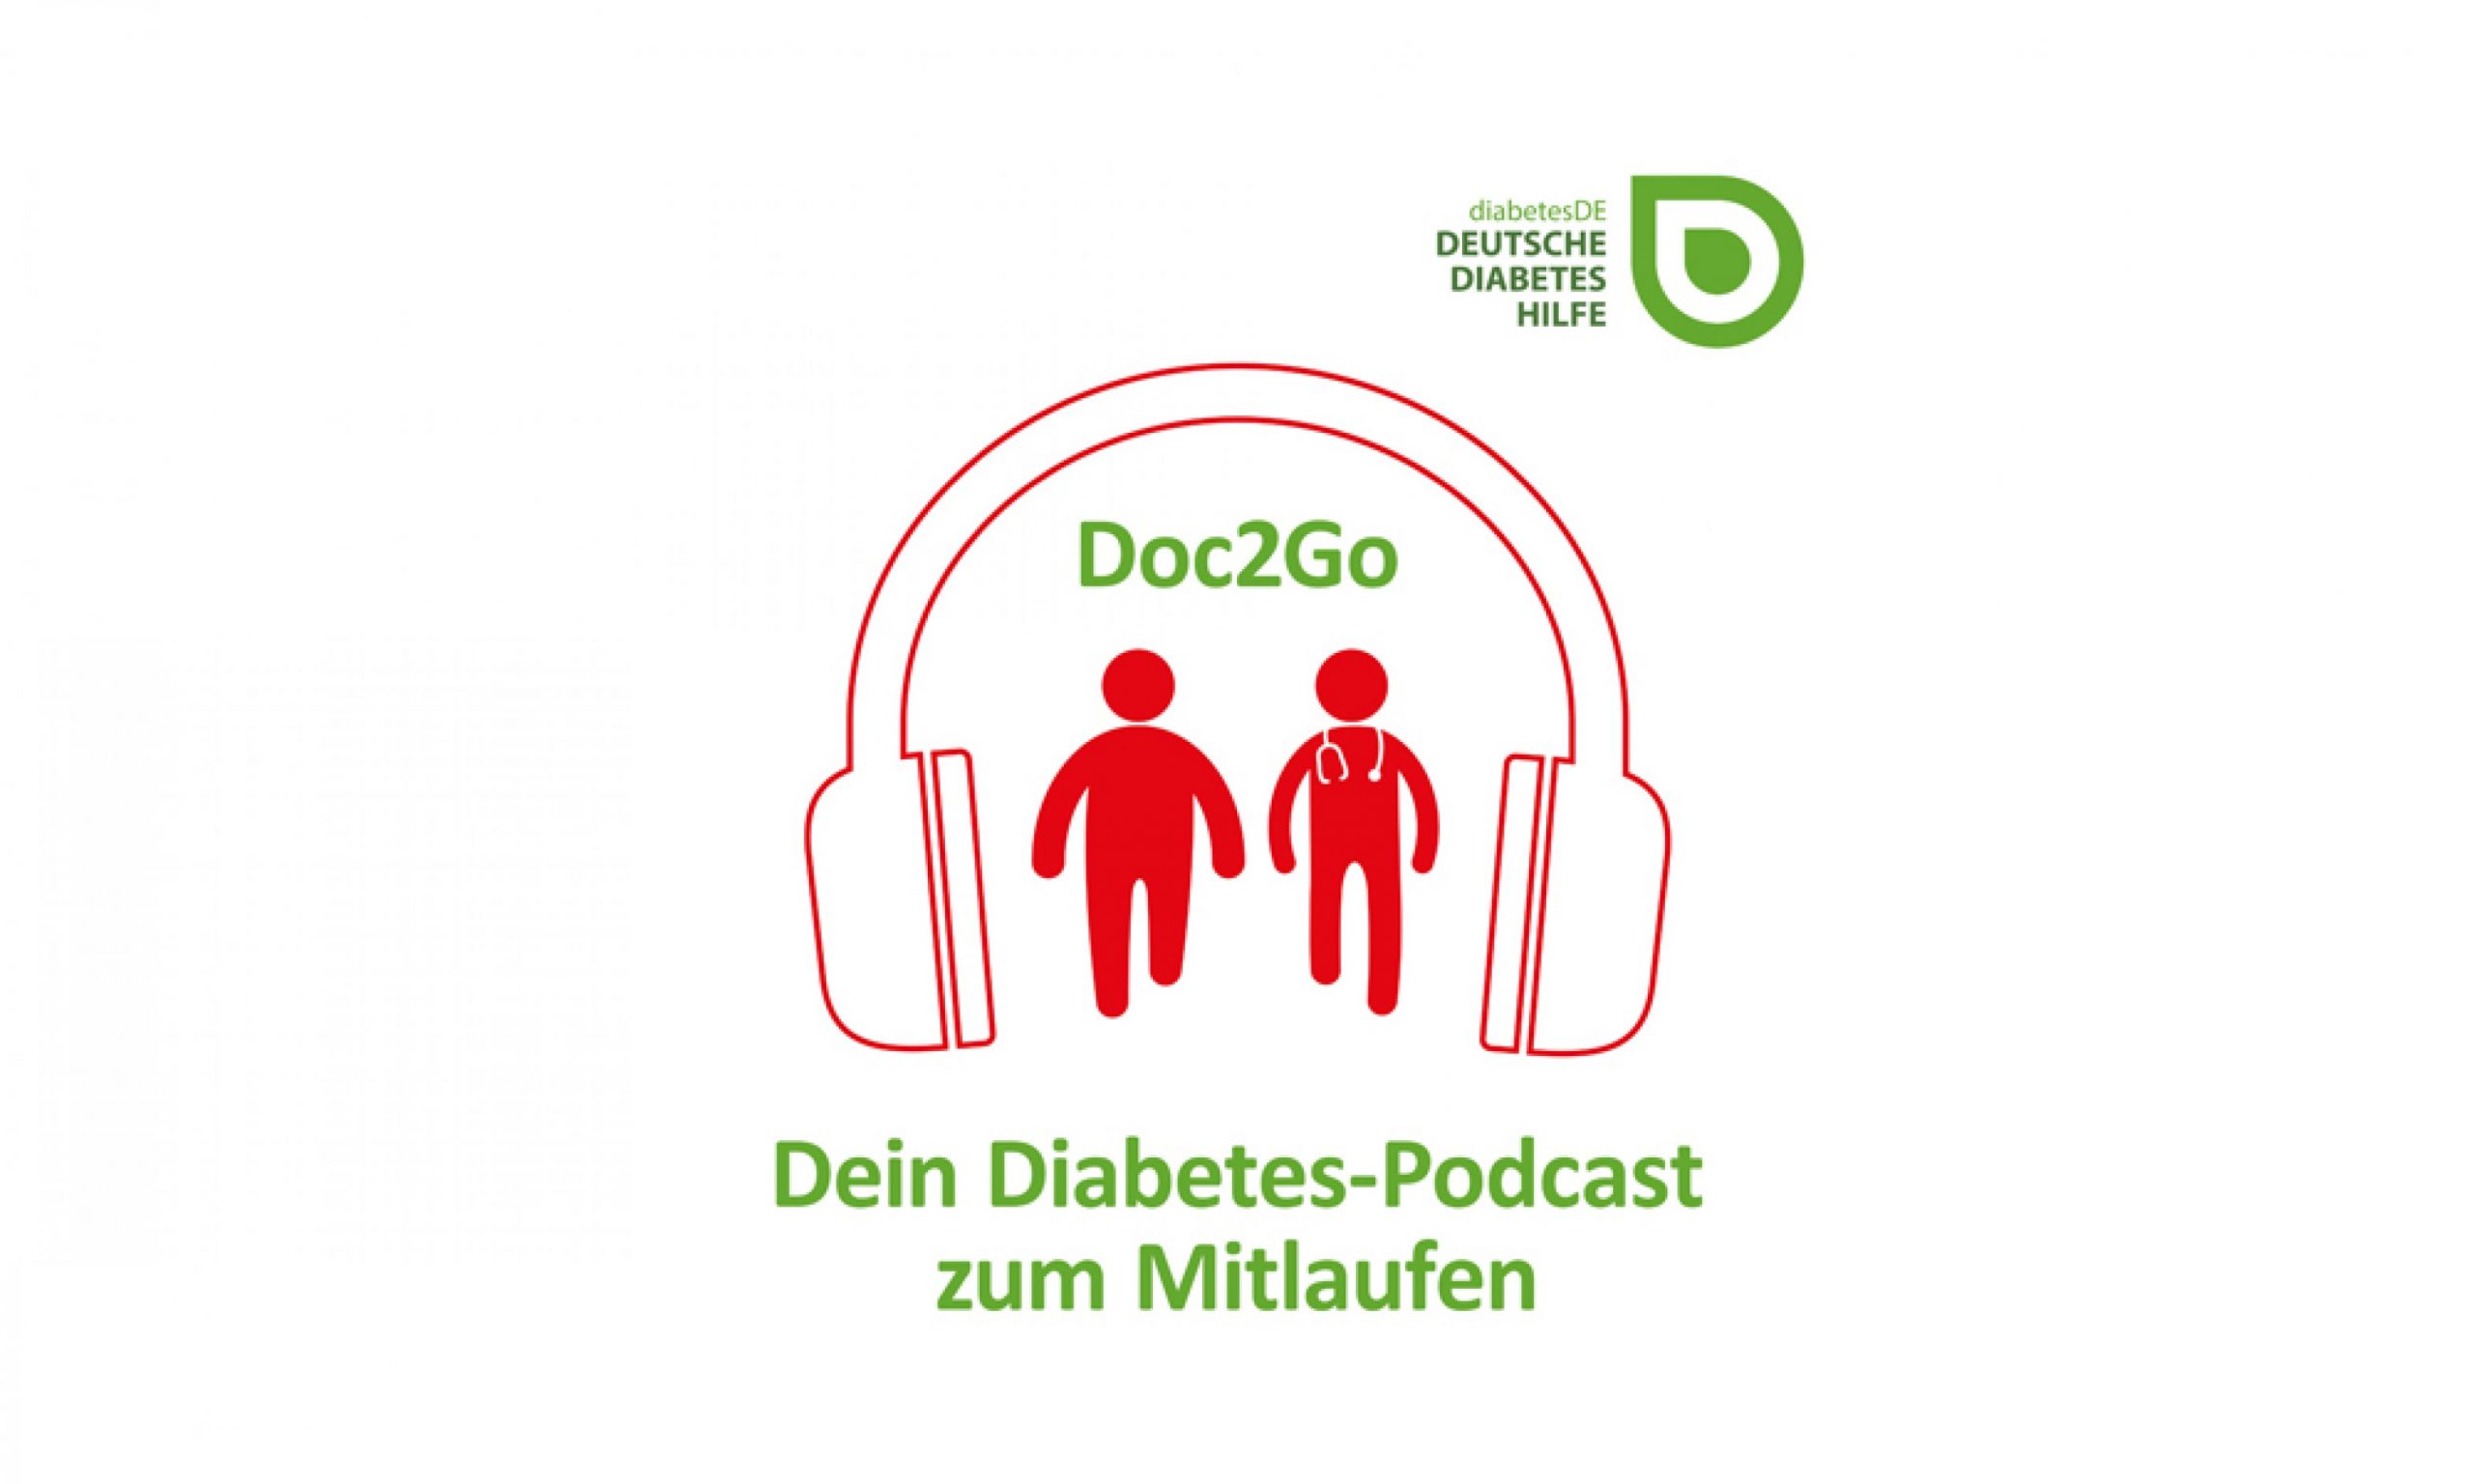 Doc2Go – der erste Diabetes-Podcast zum Mitlaufen